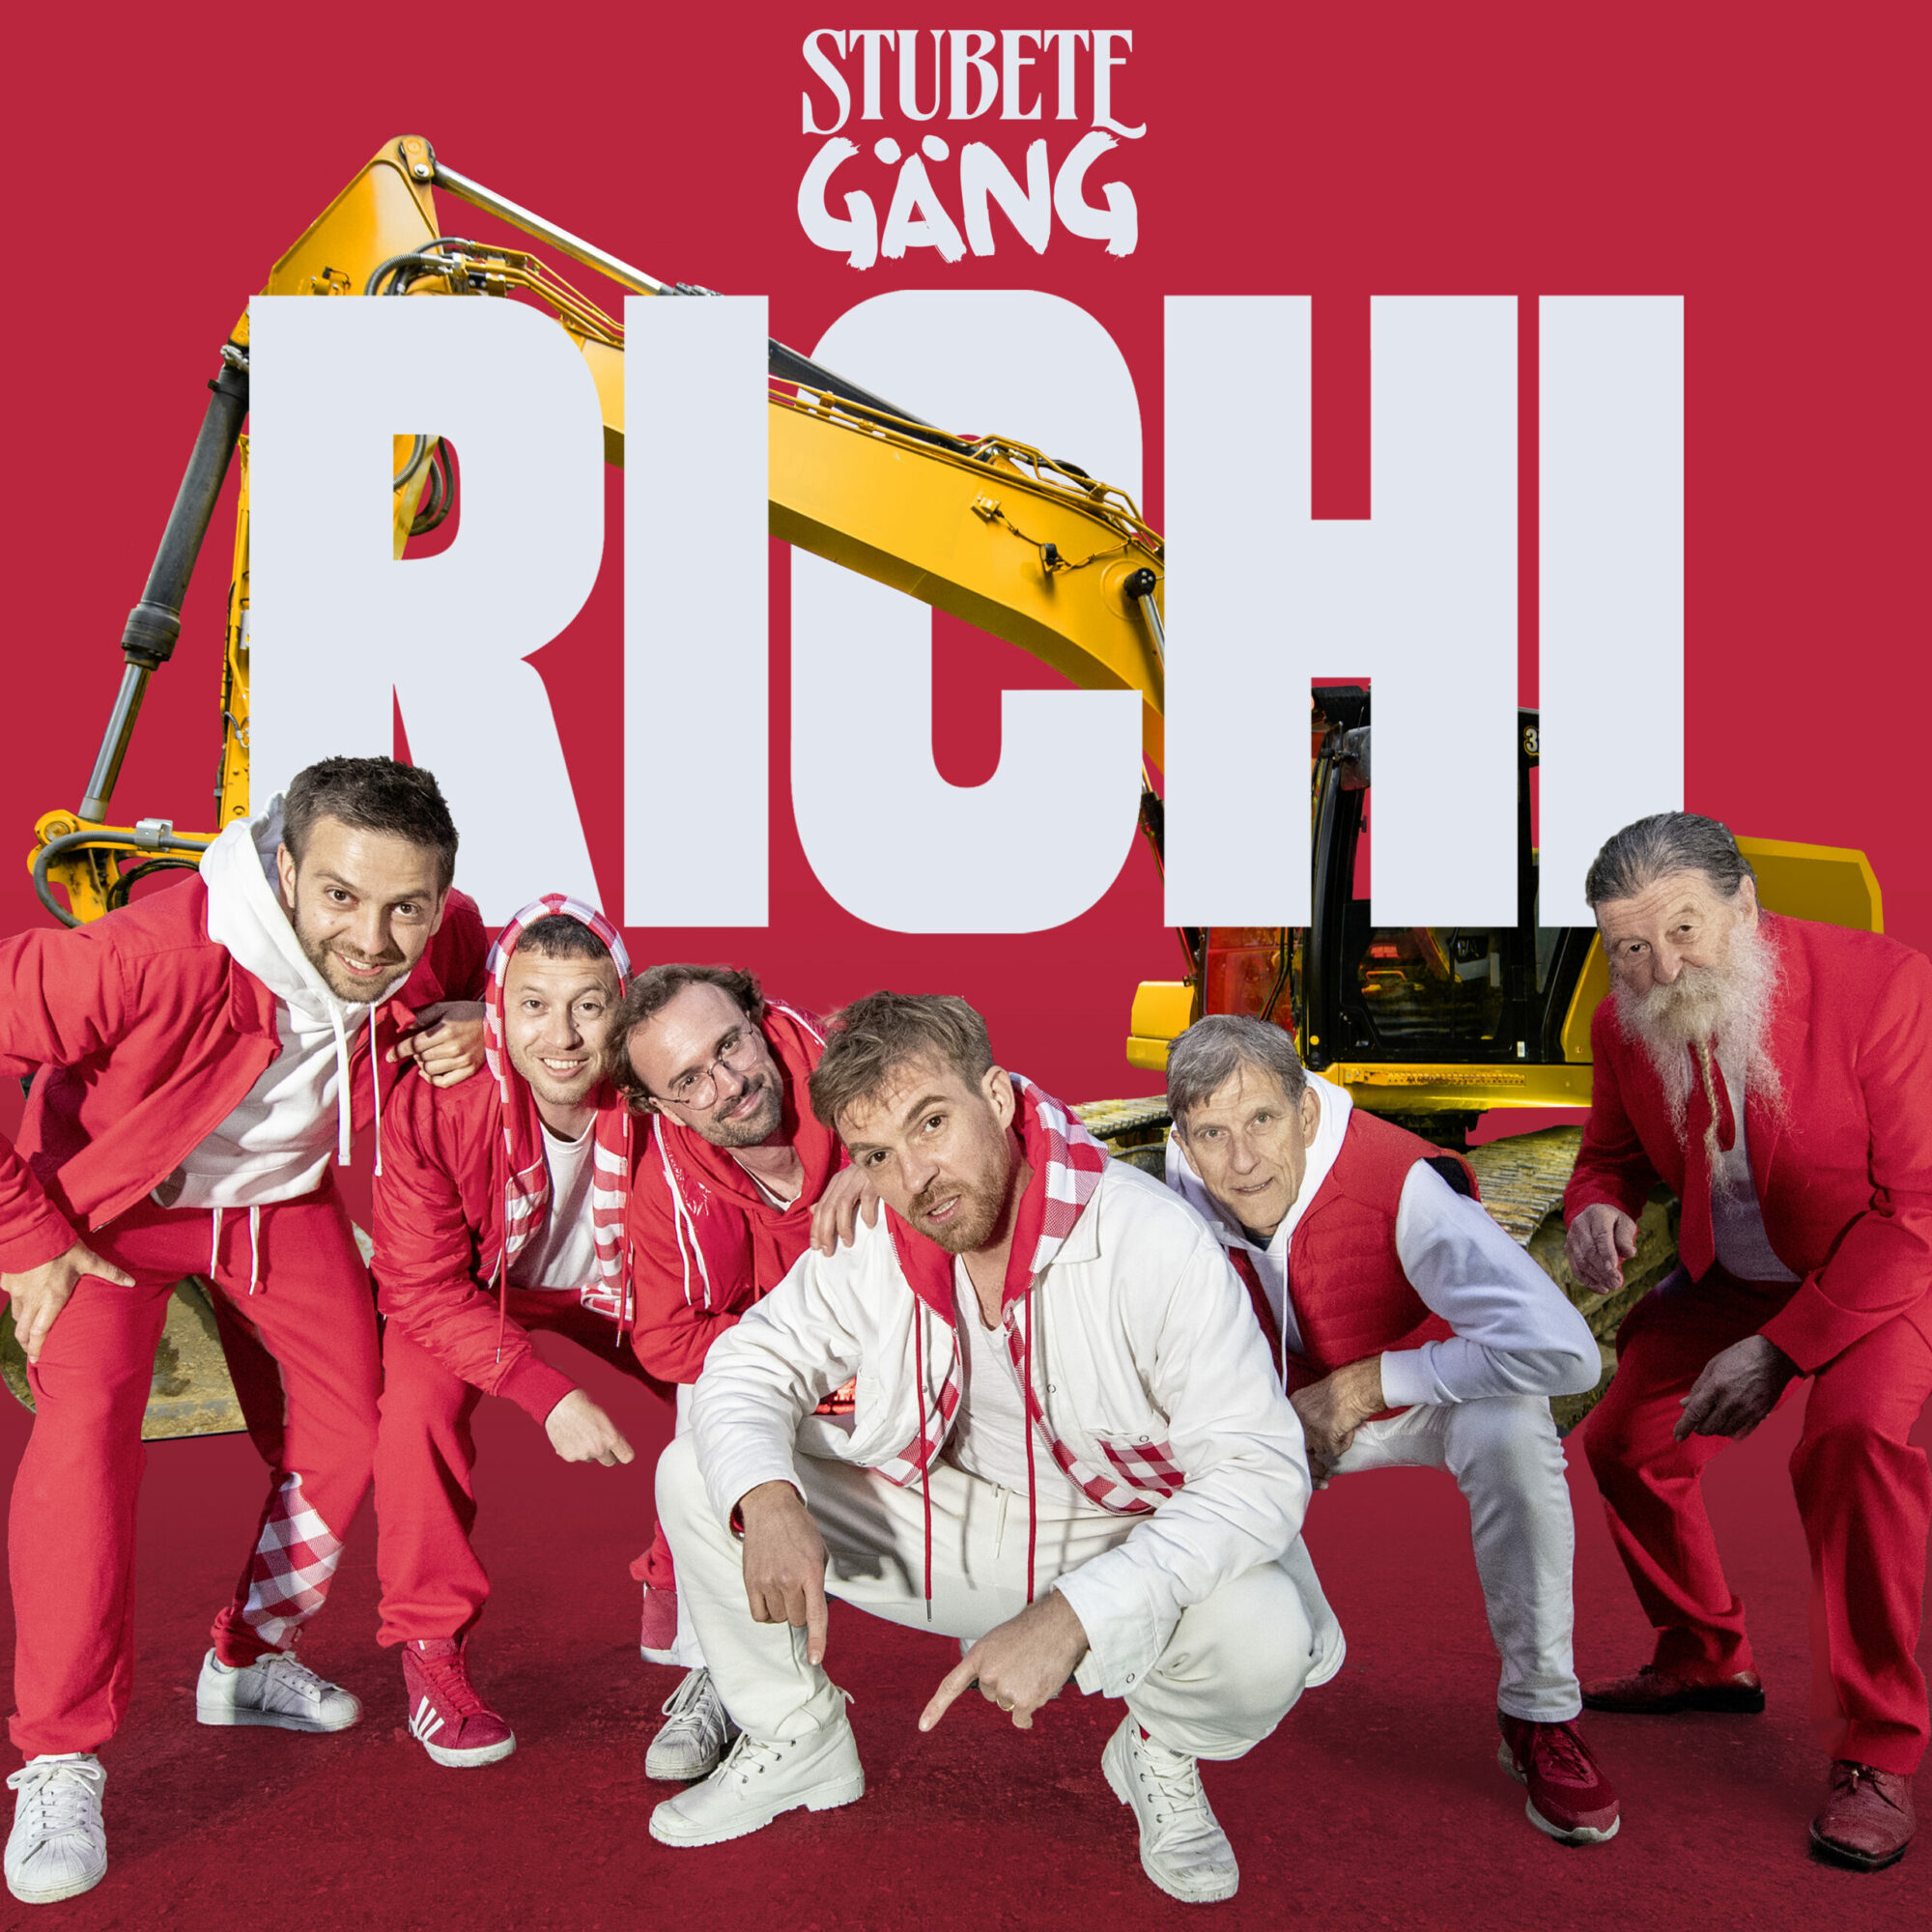 Stubete Gäng_Richi_Single_Cover